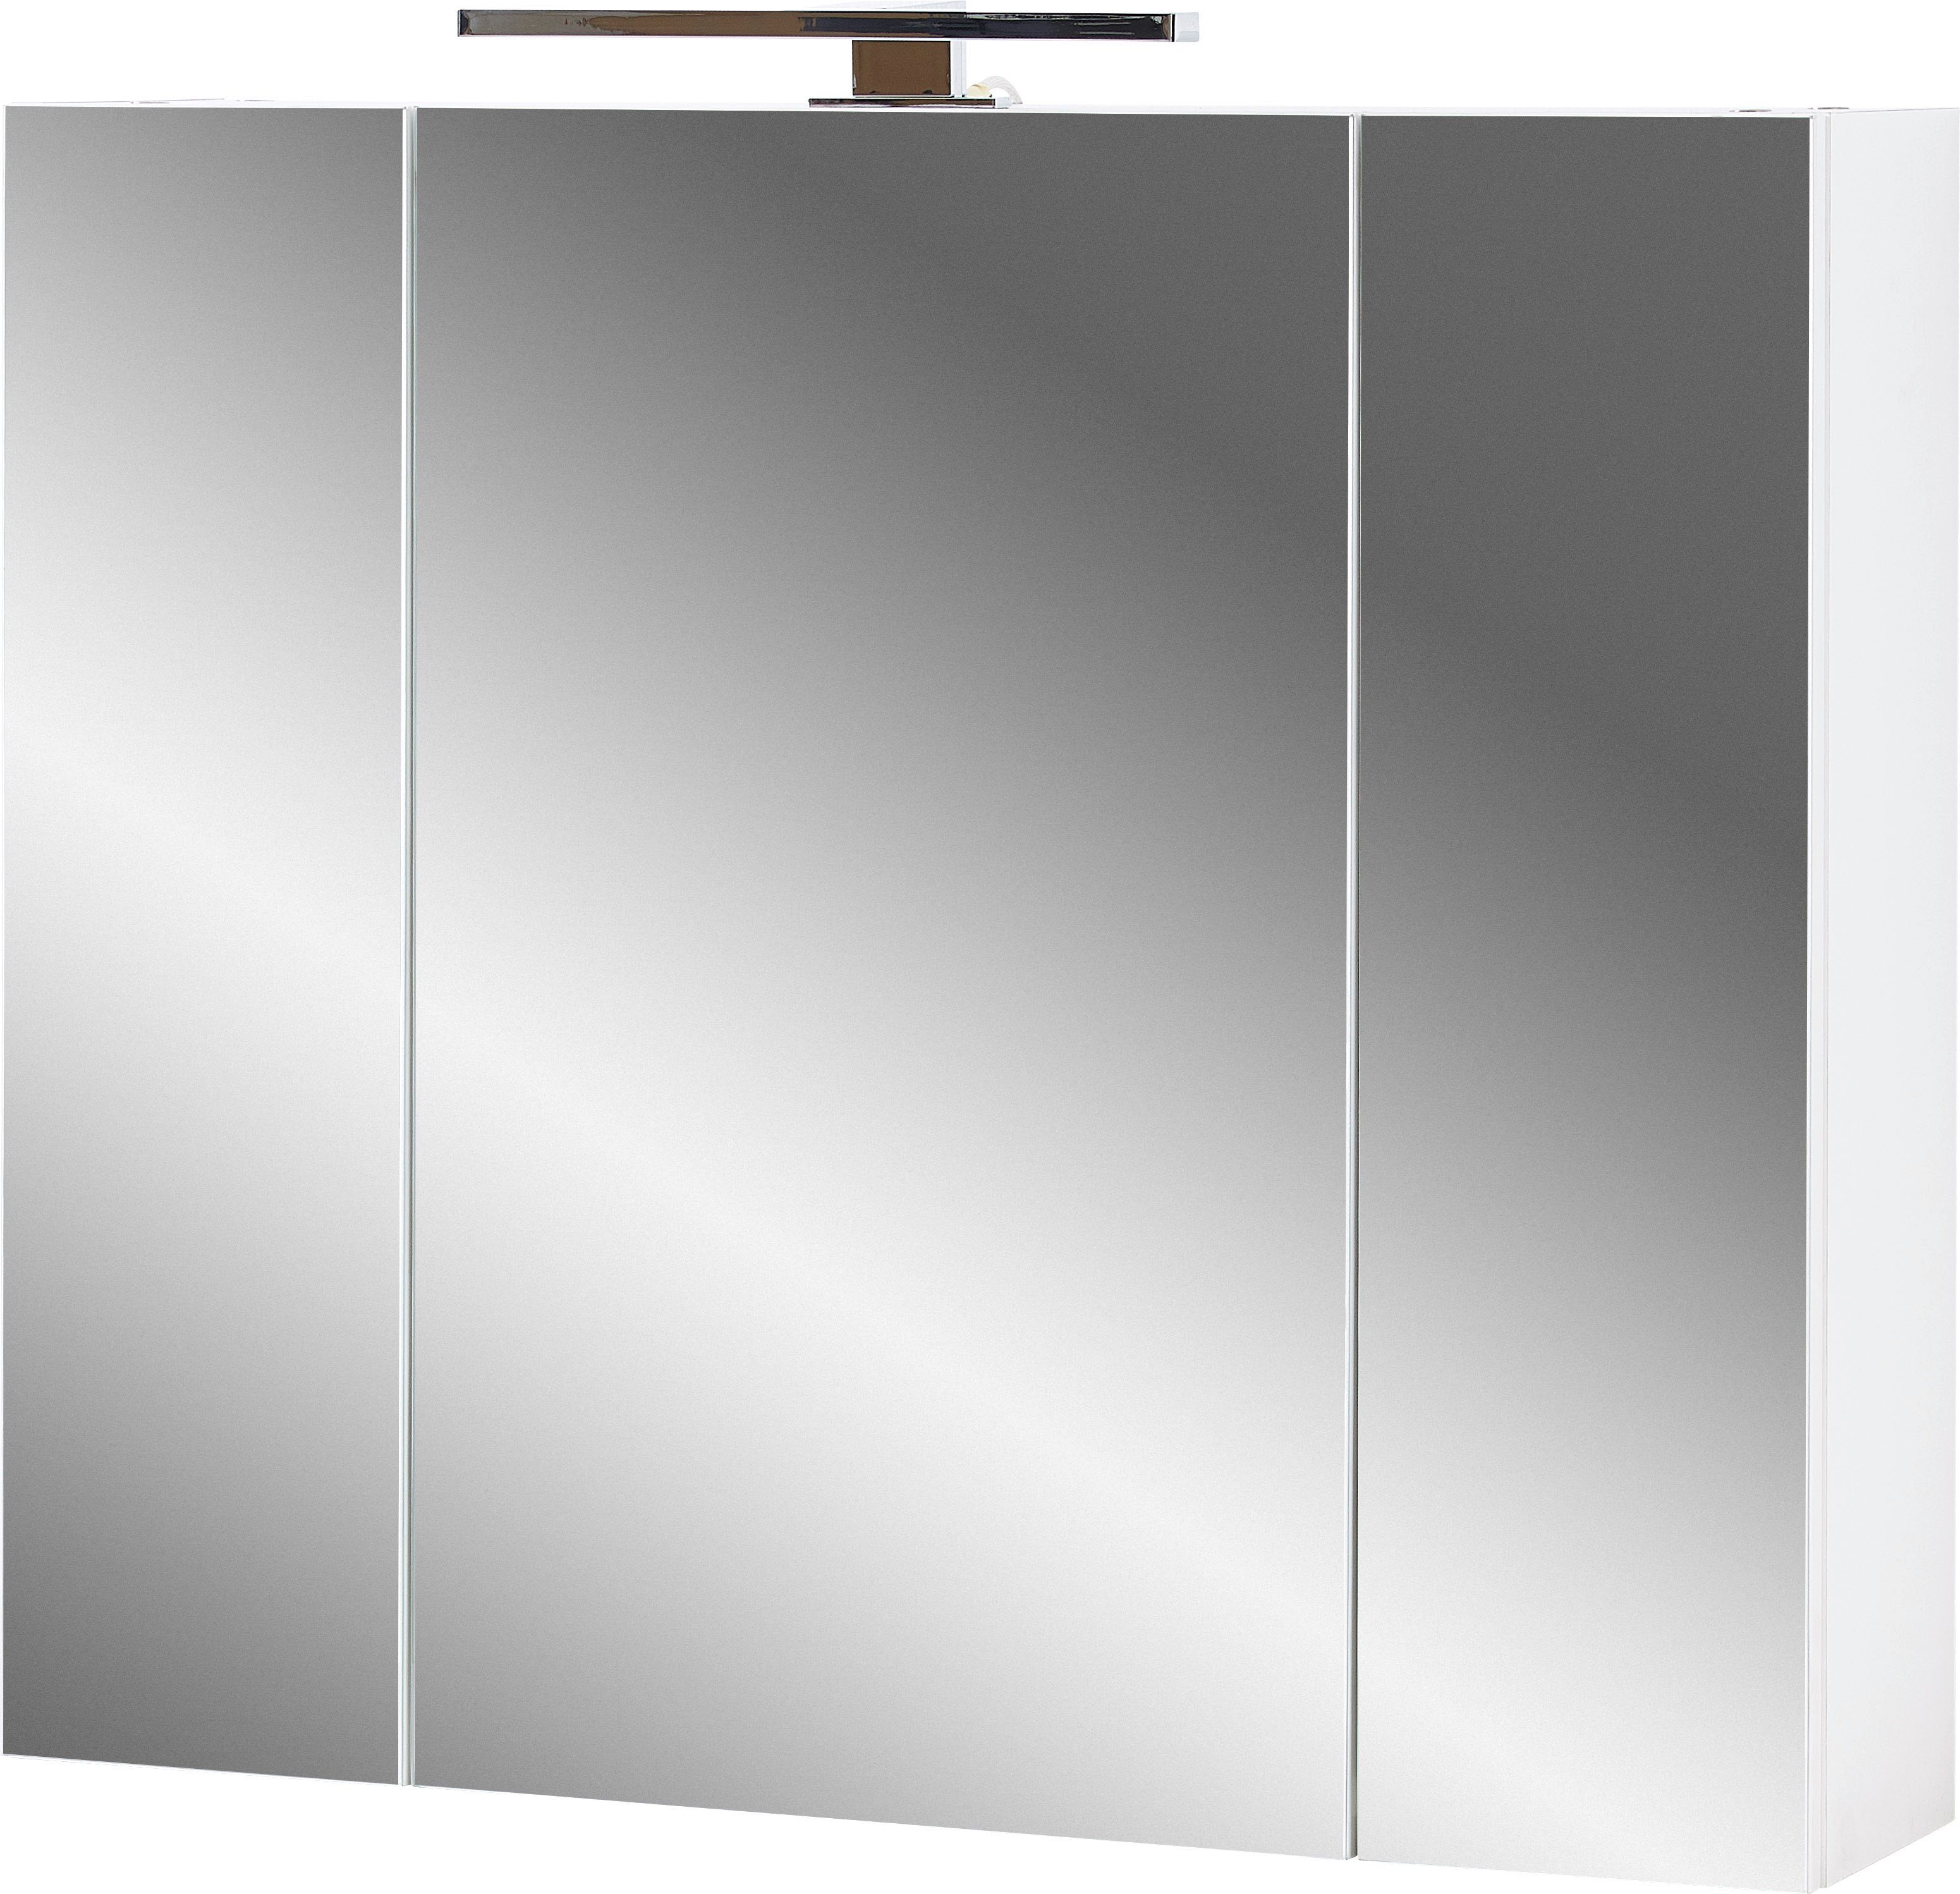 KADIMA DESIGN Badezimmerspiegelschrank INDE Spiegelschrank Dunkles Grau 76 x 71 x 23